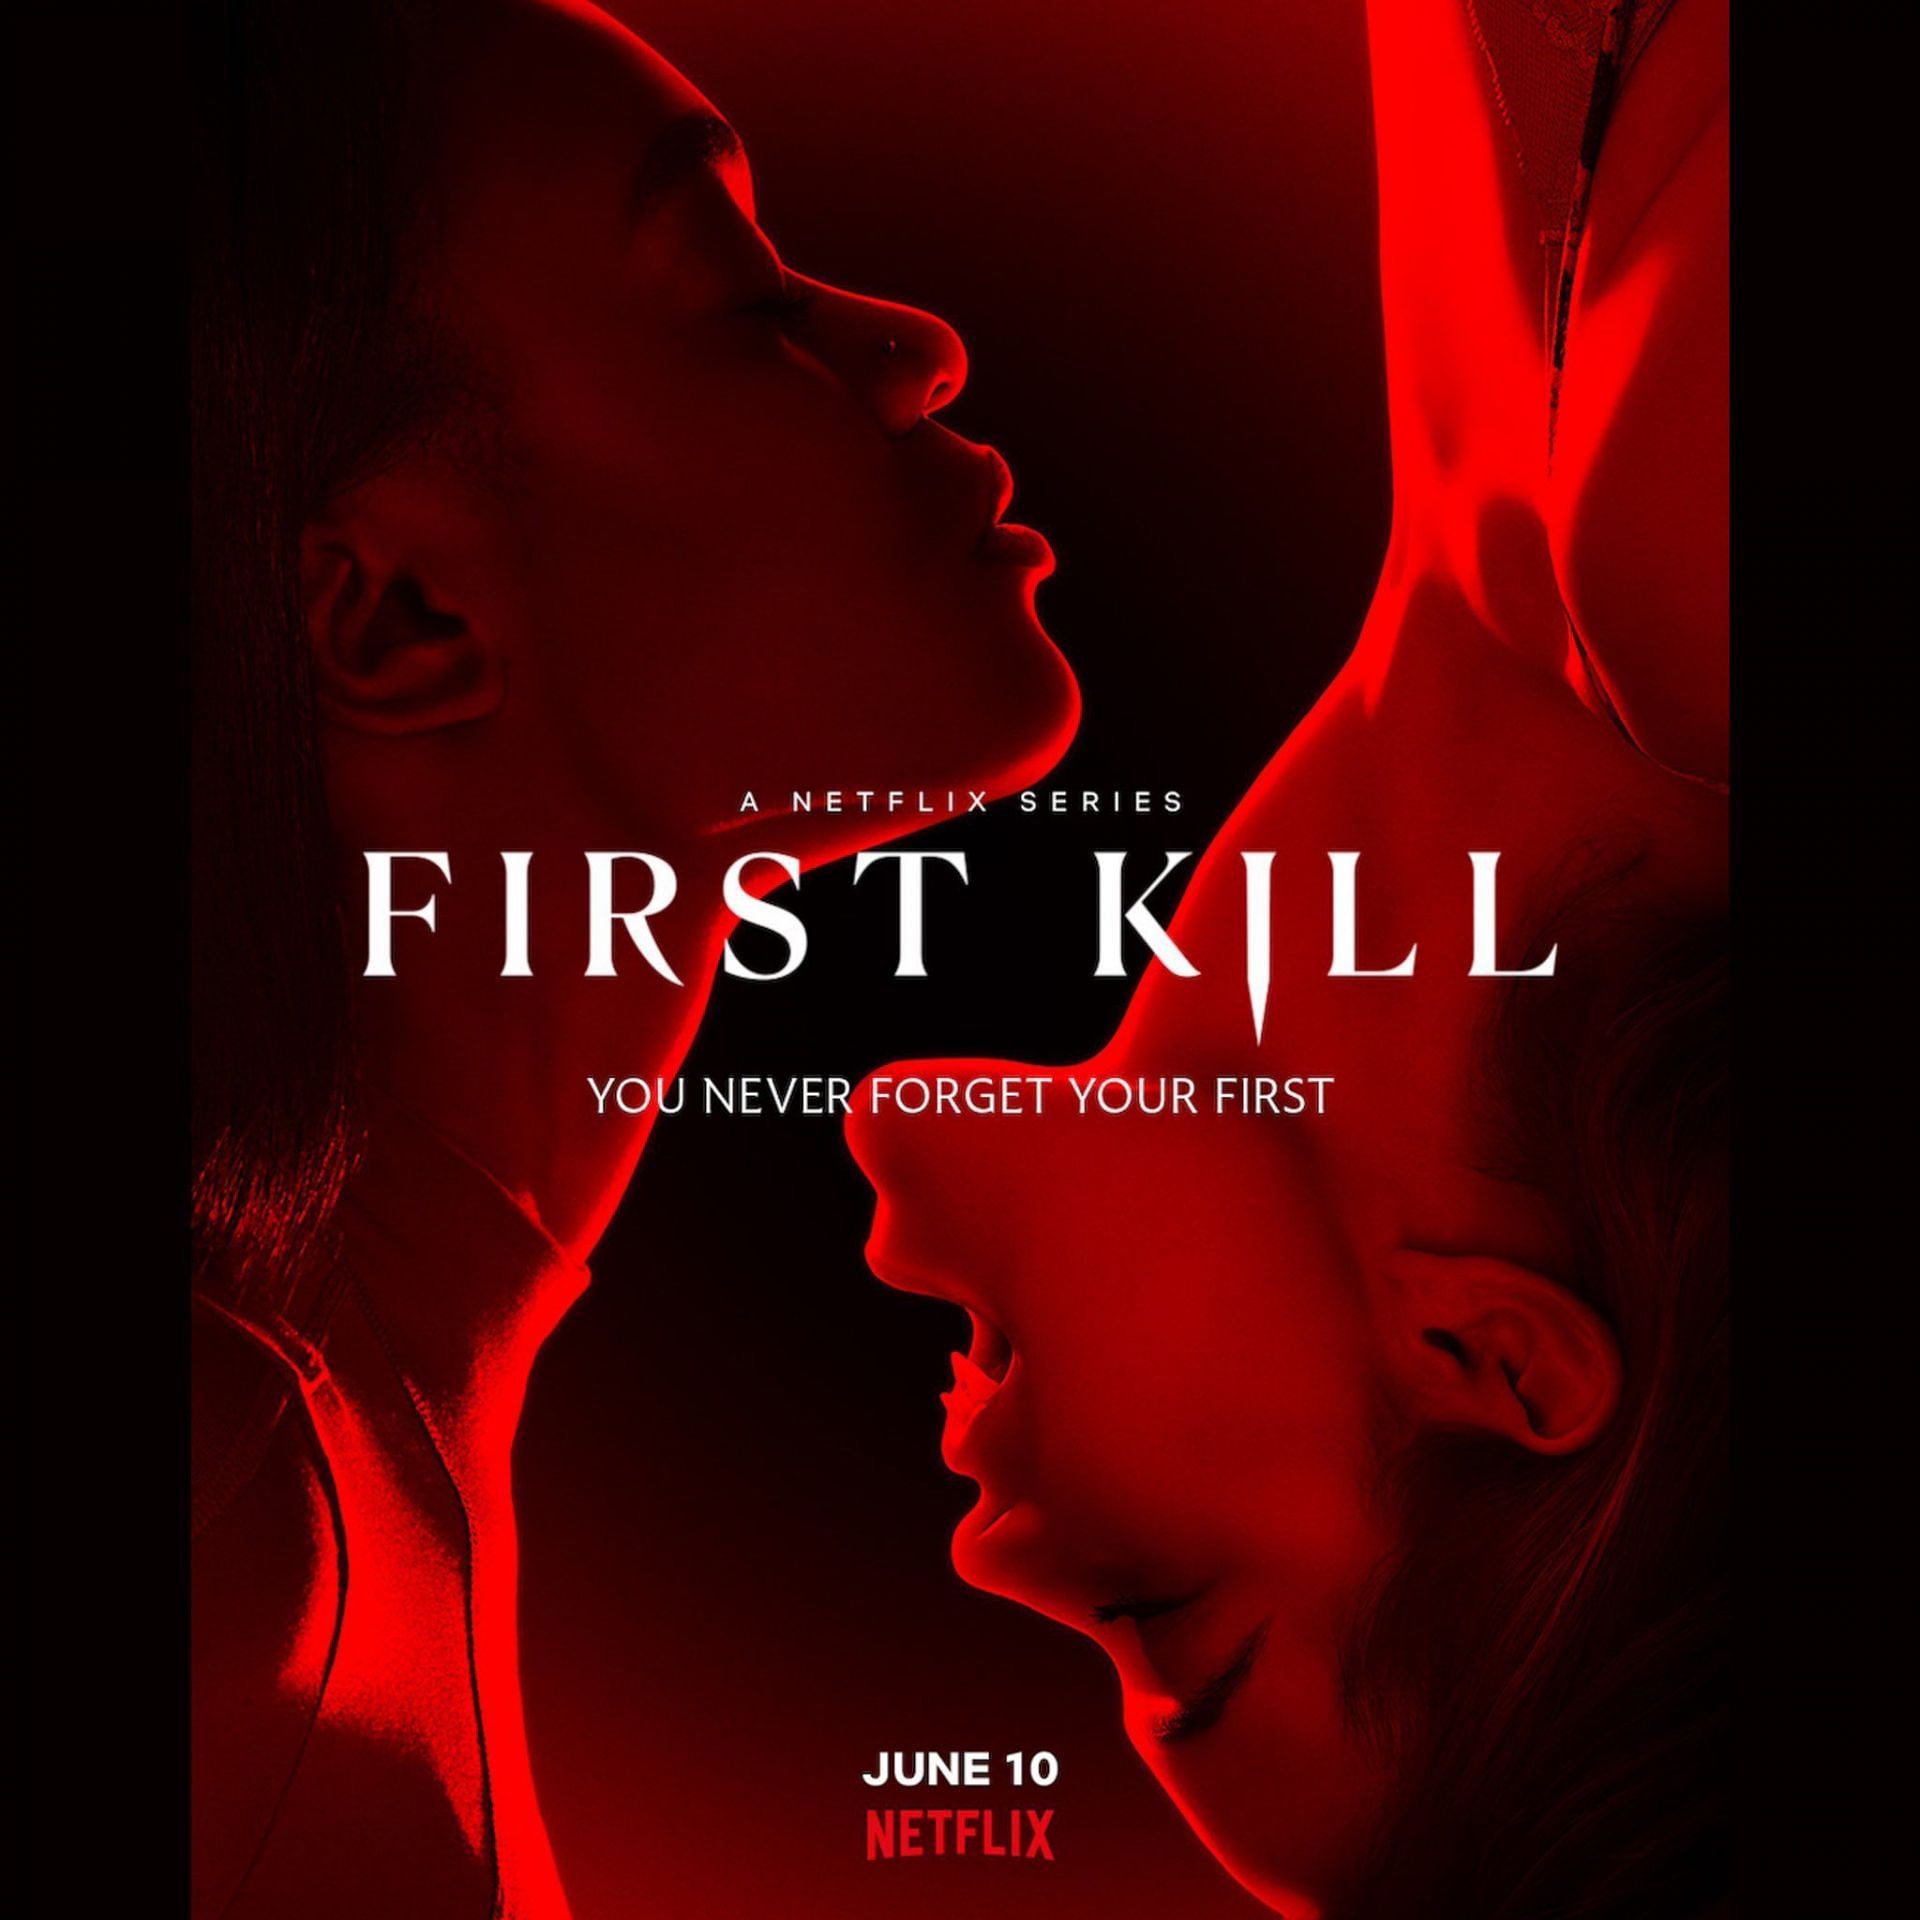 First Kill (Image via Netflix)